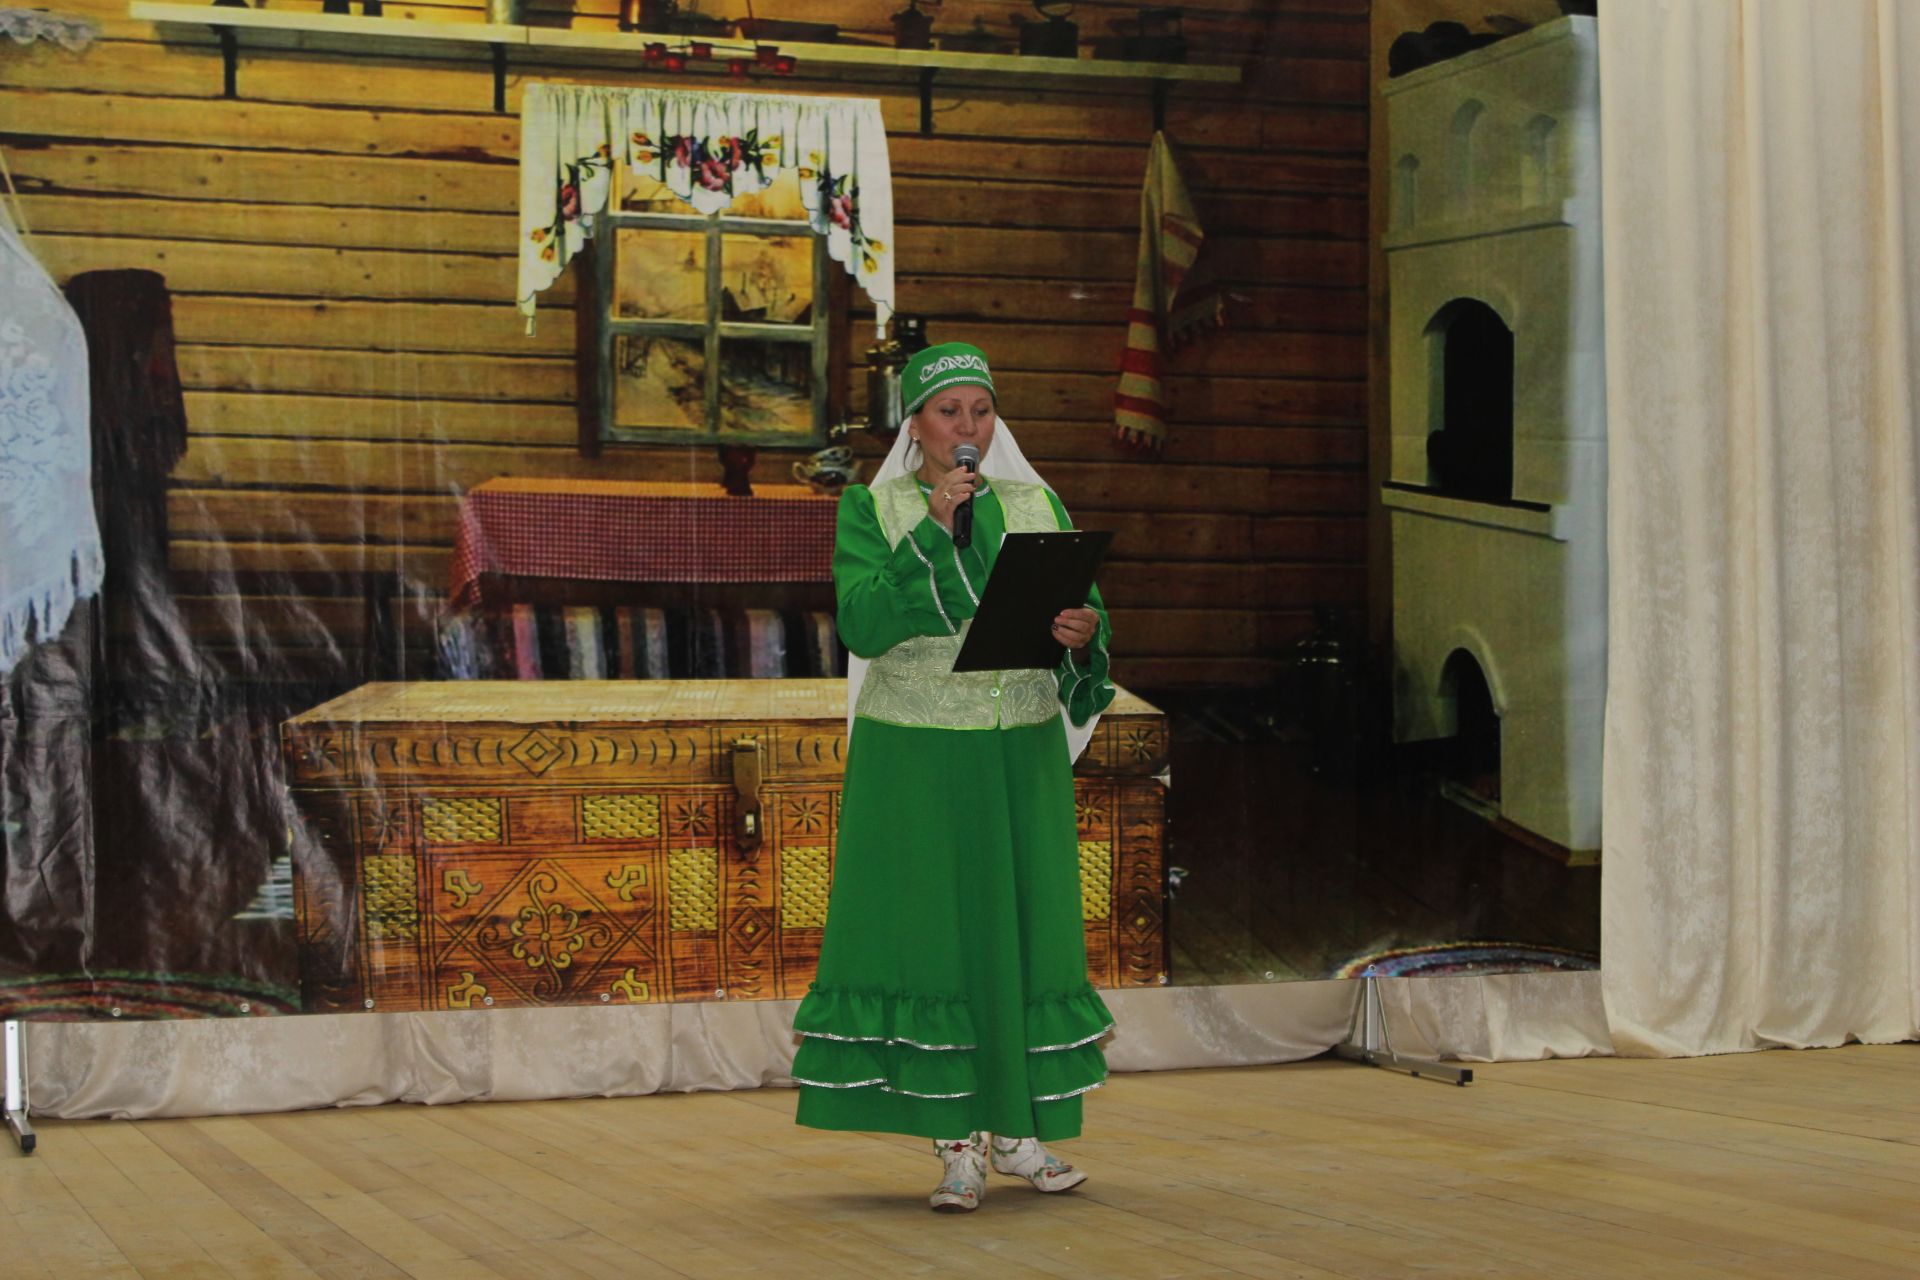 Традиции живы! Молодые таланты из чистопольских сел продемонстрировали знания народных сказок, игр, легенд